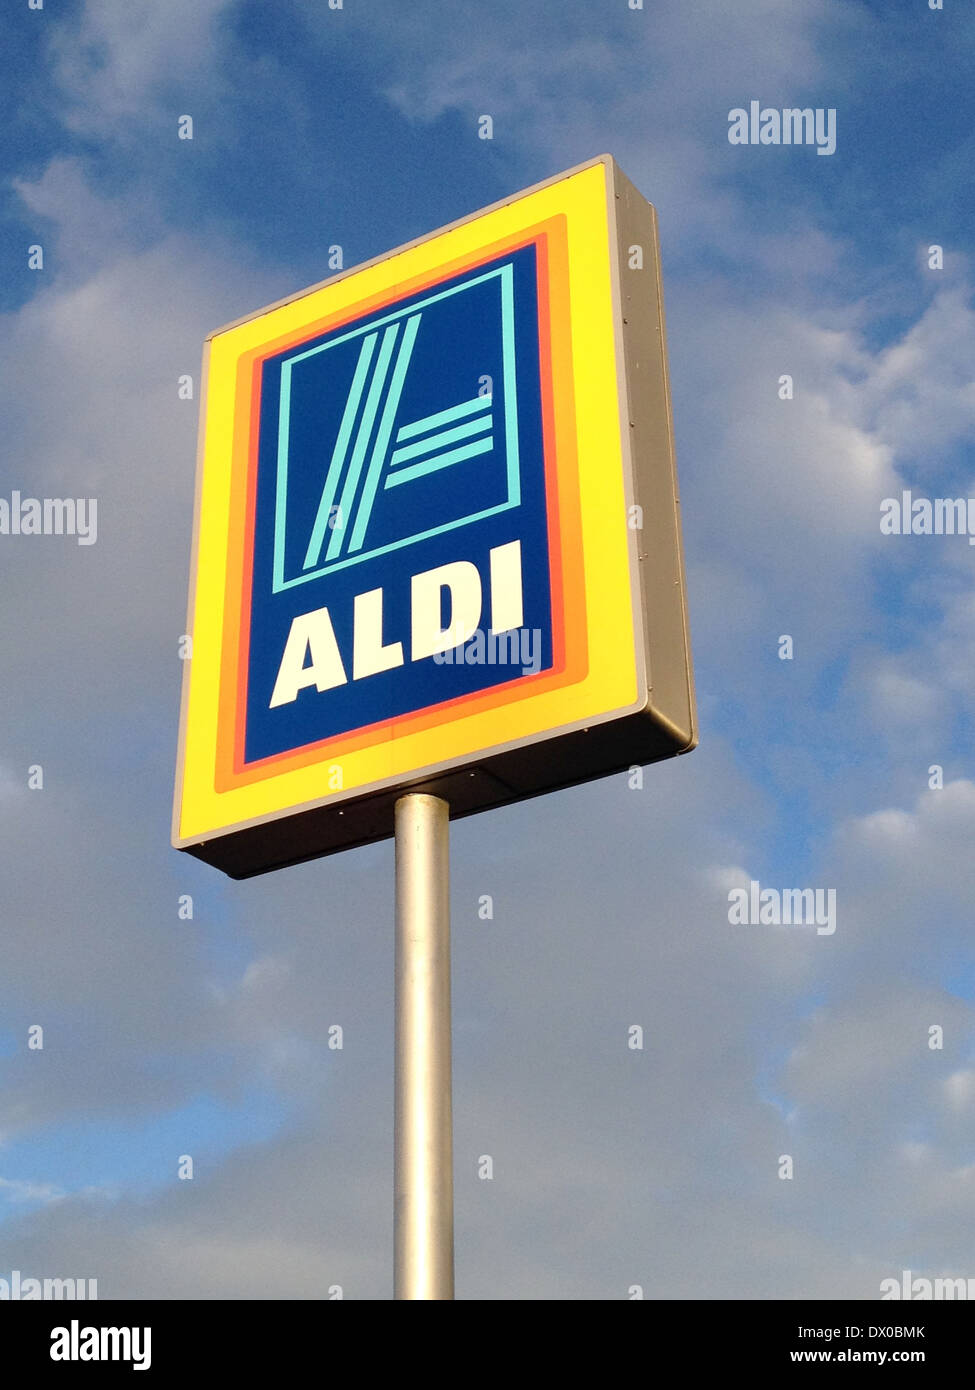 Aldi retailer sign Stock Photo